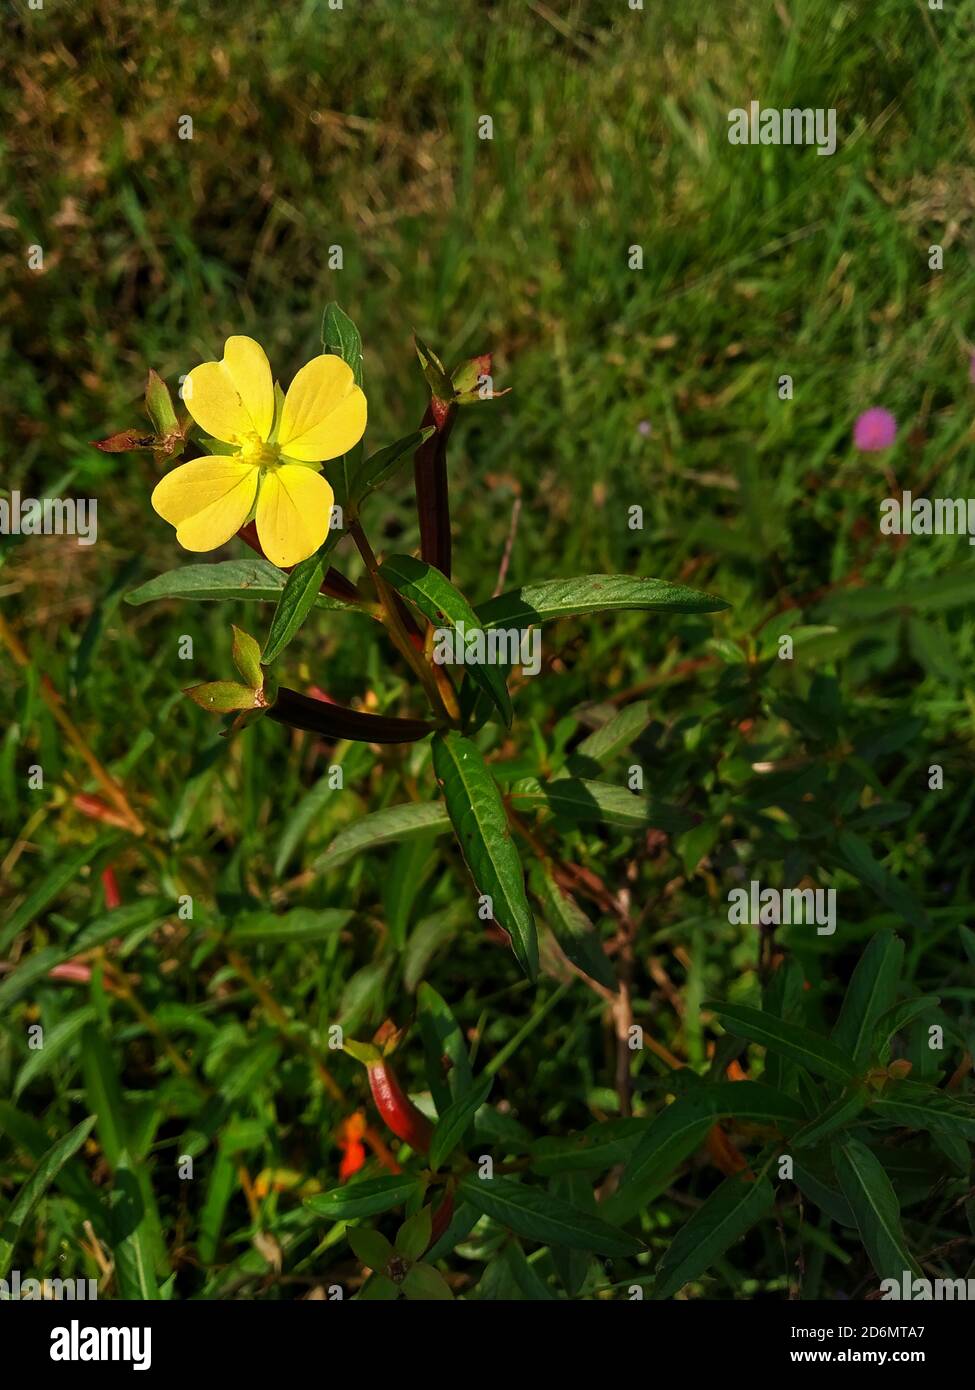 Fleur jaune Ludwigia octovalvis est une espèce herbacée. Ludwigia octovalvis appartient au genre ludwigor et à la famille des plantes de Downyx. Banque D'Images